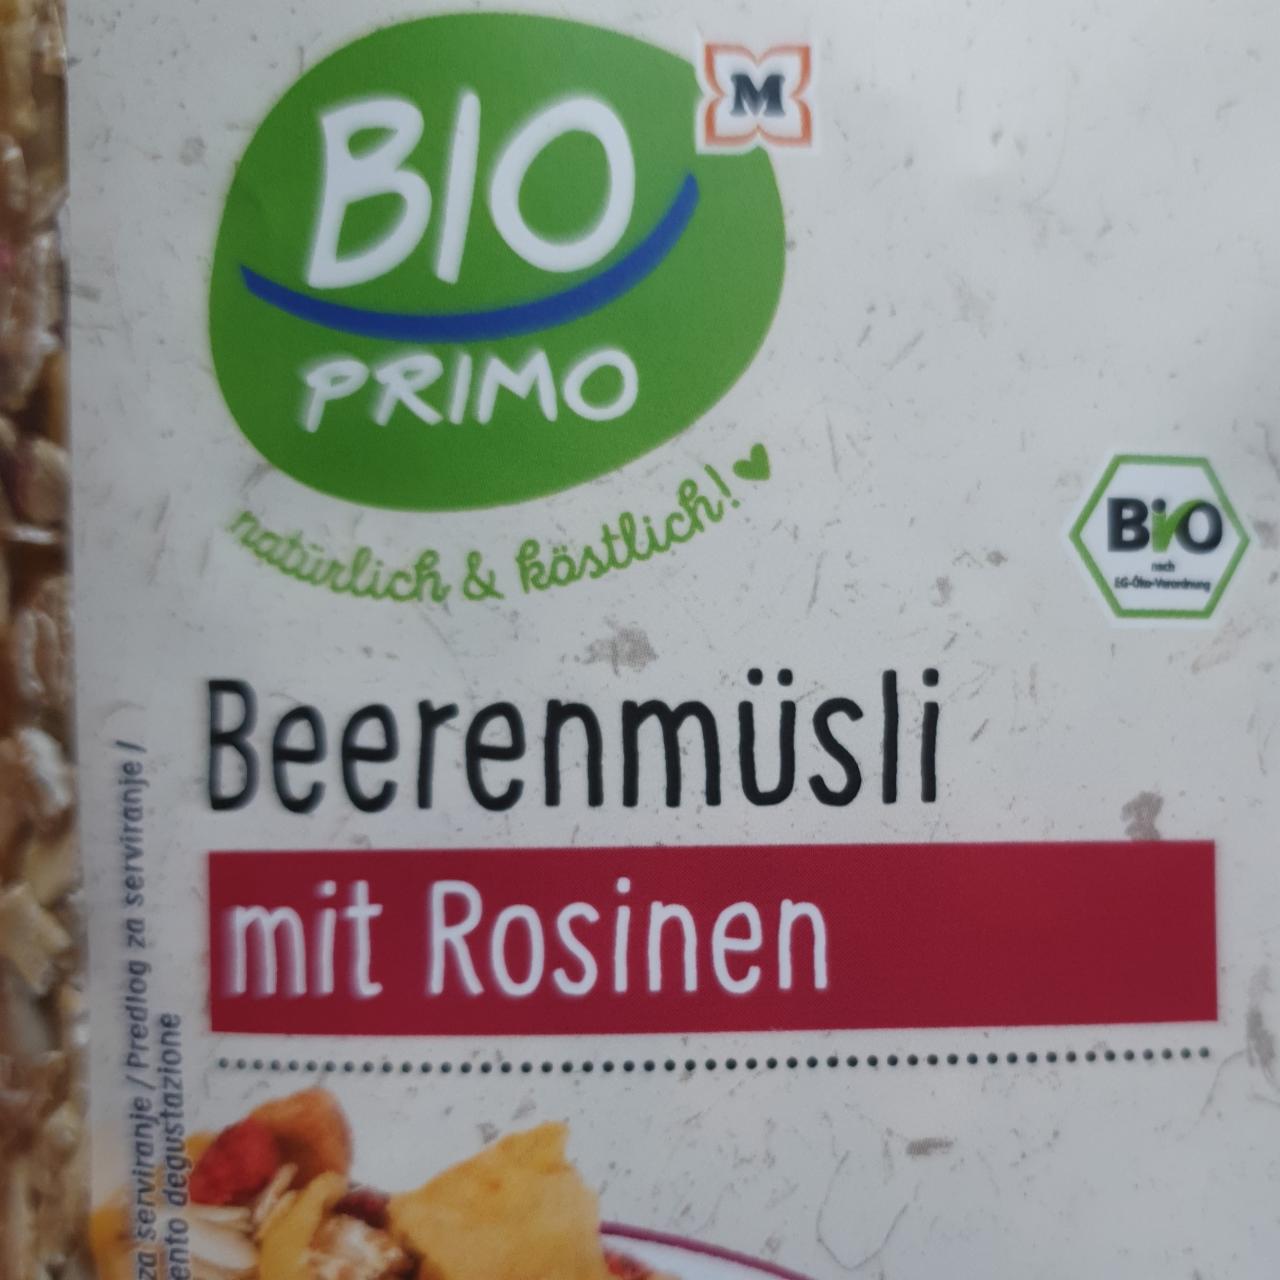 Képek - Beerenmüsli mit Rosinen Bio Primo